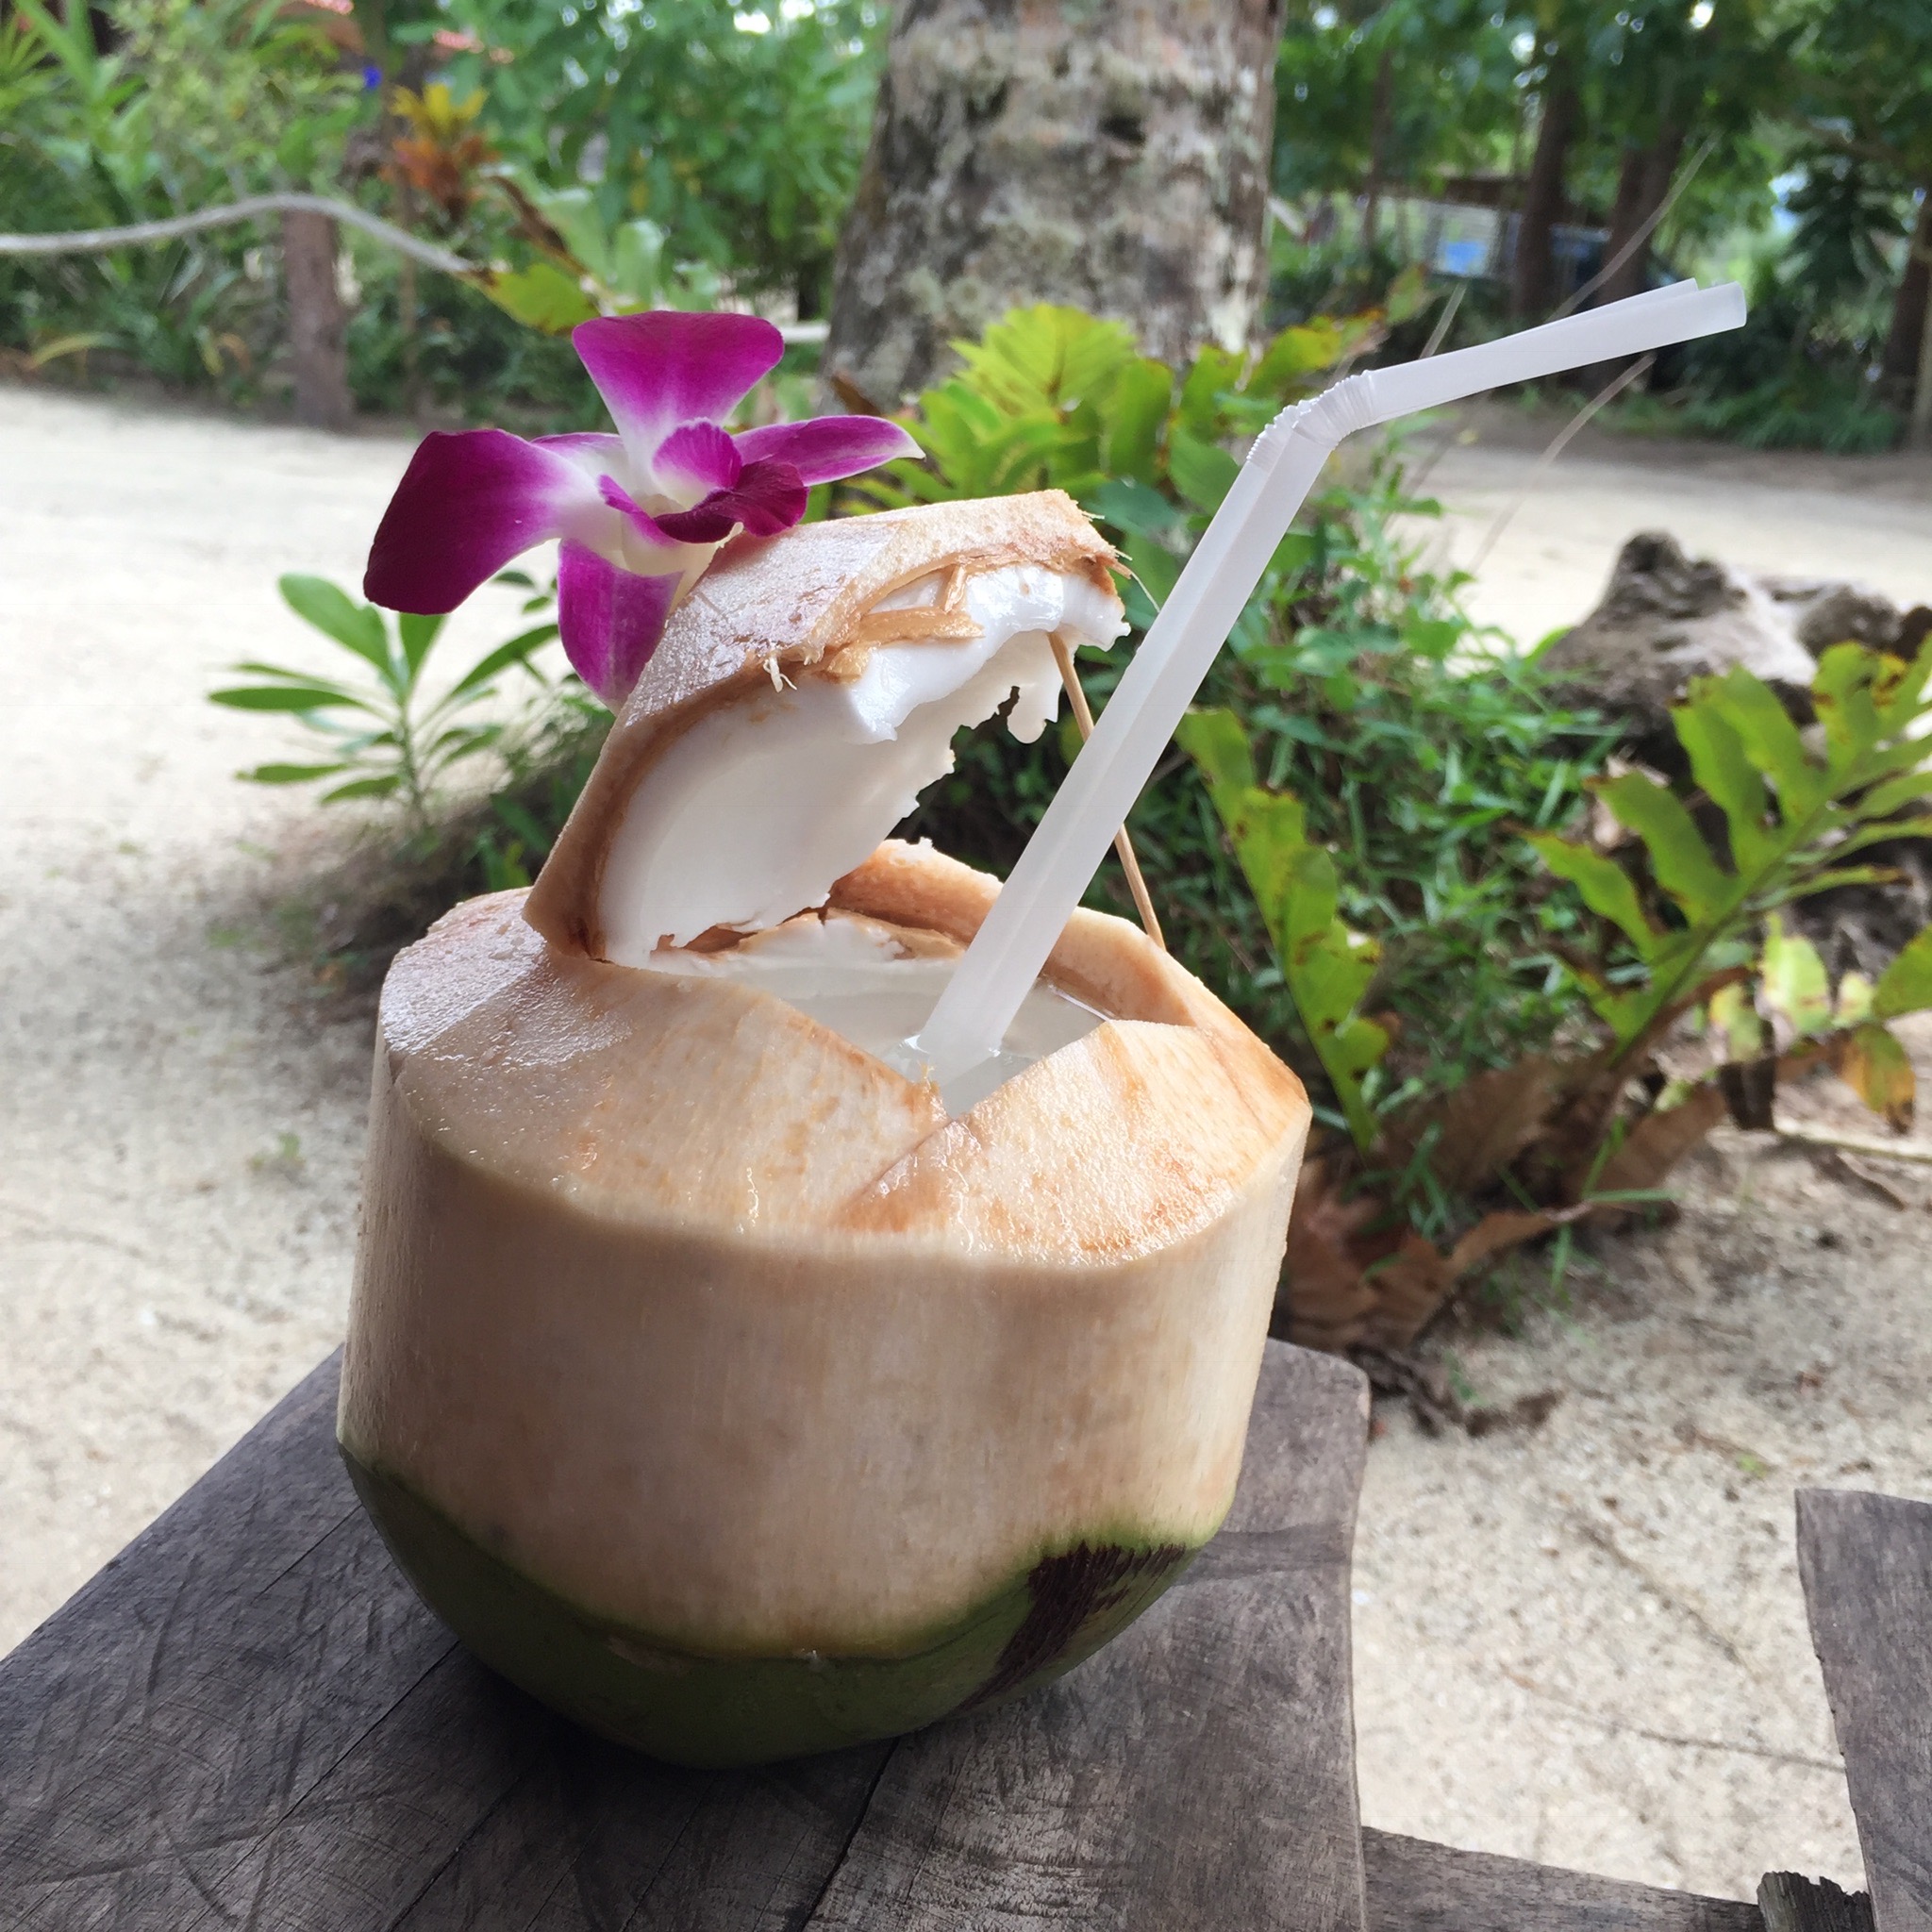 Dricker flera kokosnötter om dagen här. Verkligen godaste som finns. Tror jag kommer sakna detta brutalt mycket när jag kommer hem